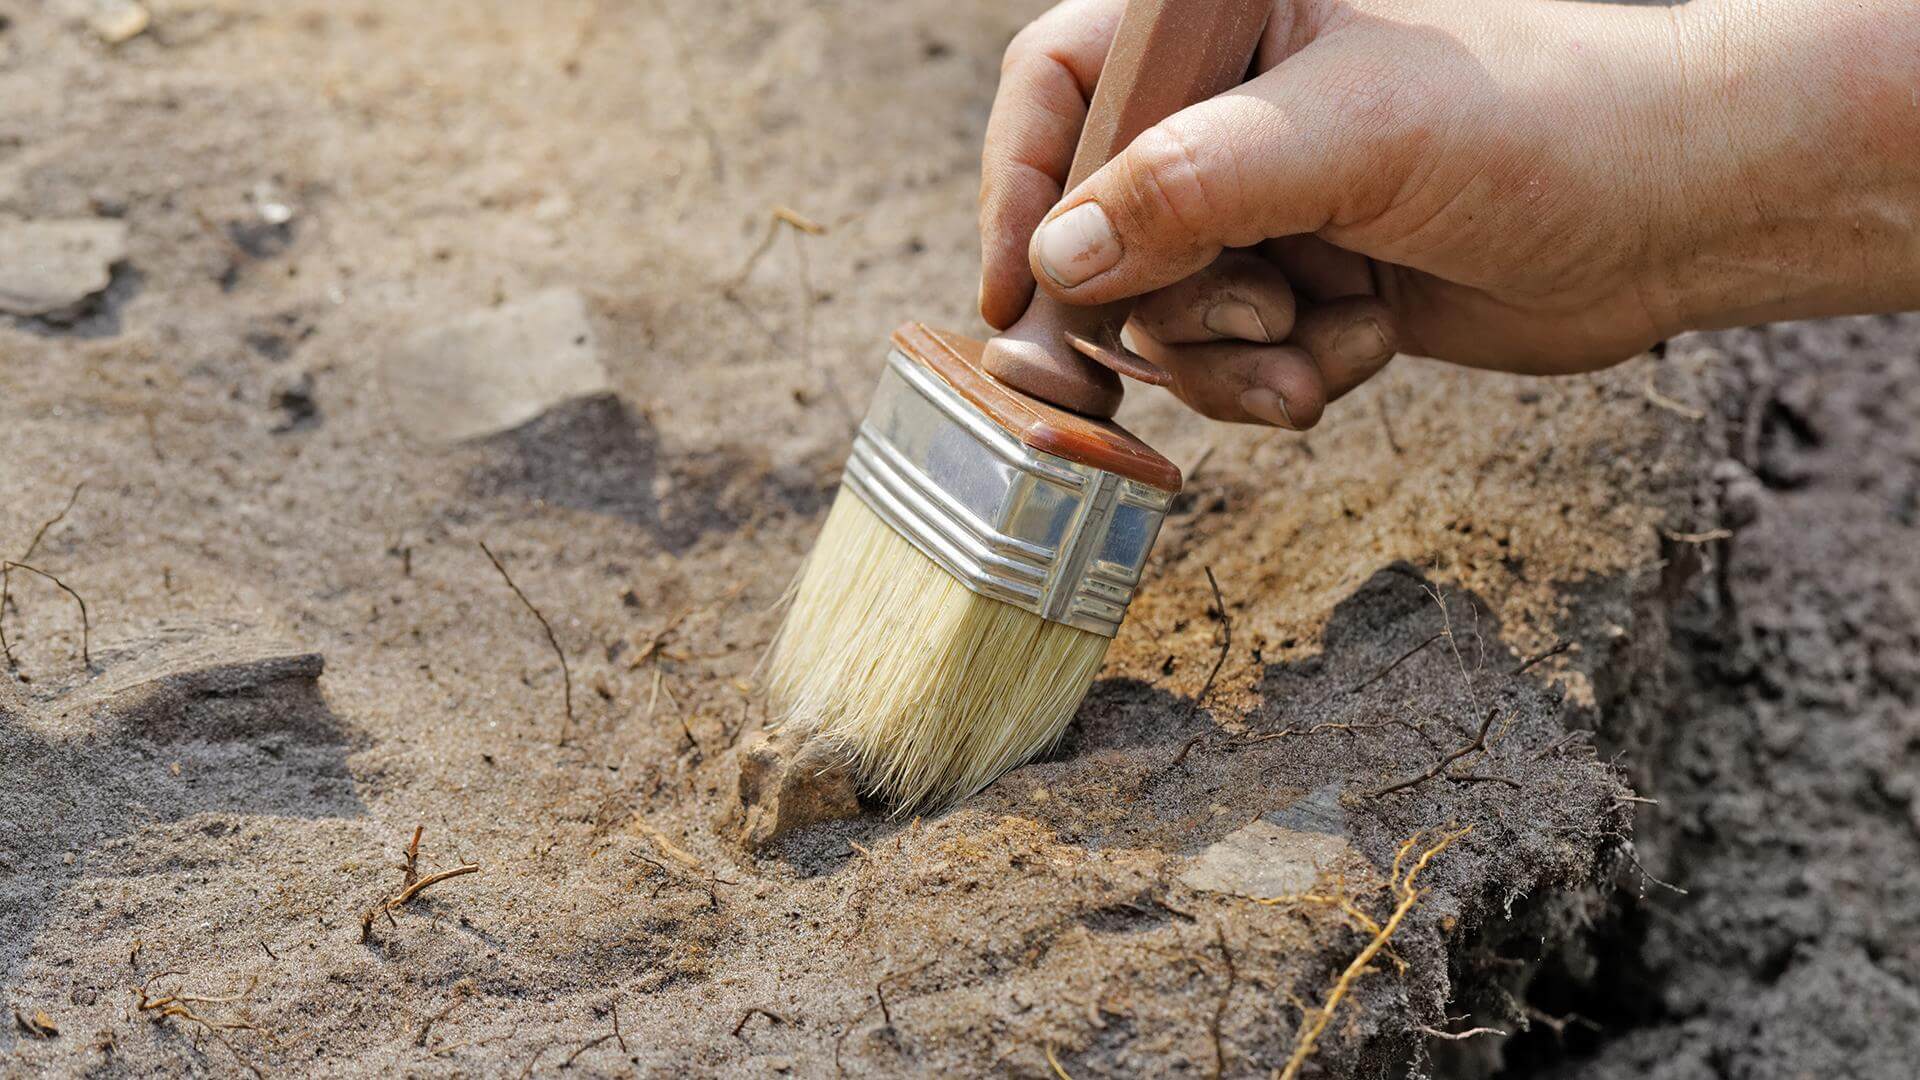 وقد وجد علماء الآثار أقدم خشبية كائن من أي وقت مضى خلق من قبل الرجل